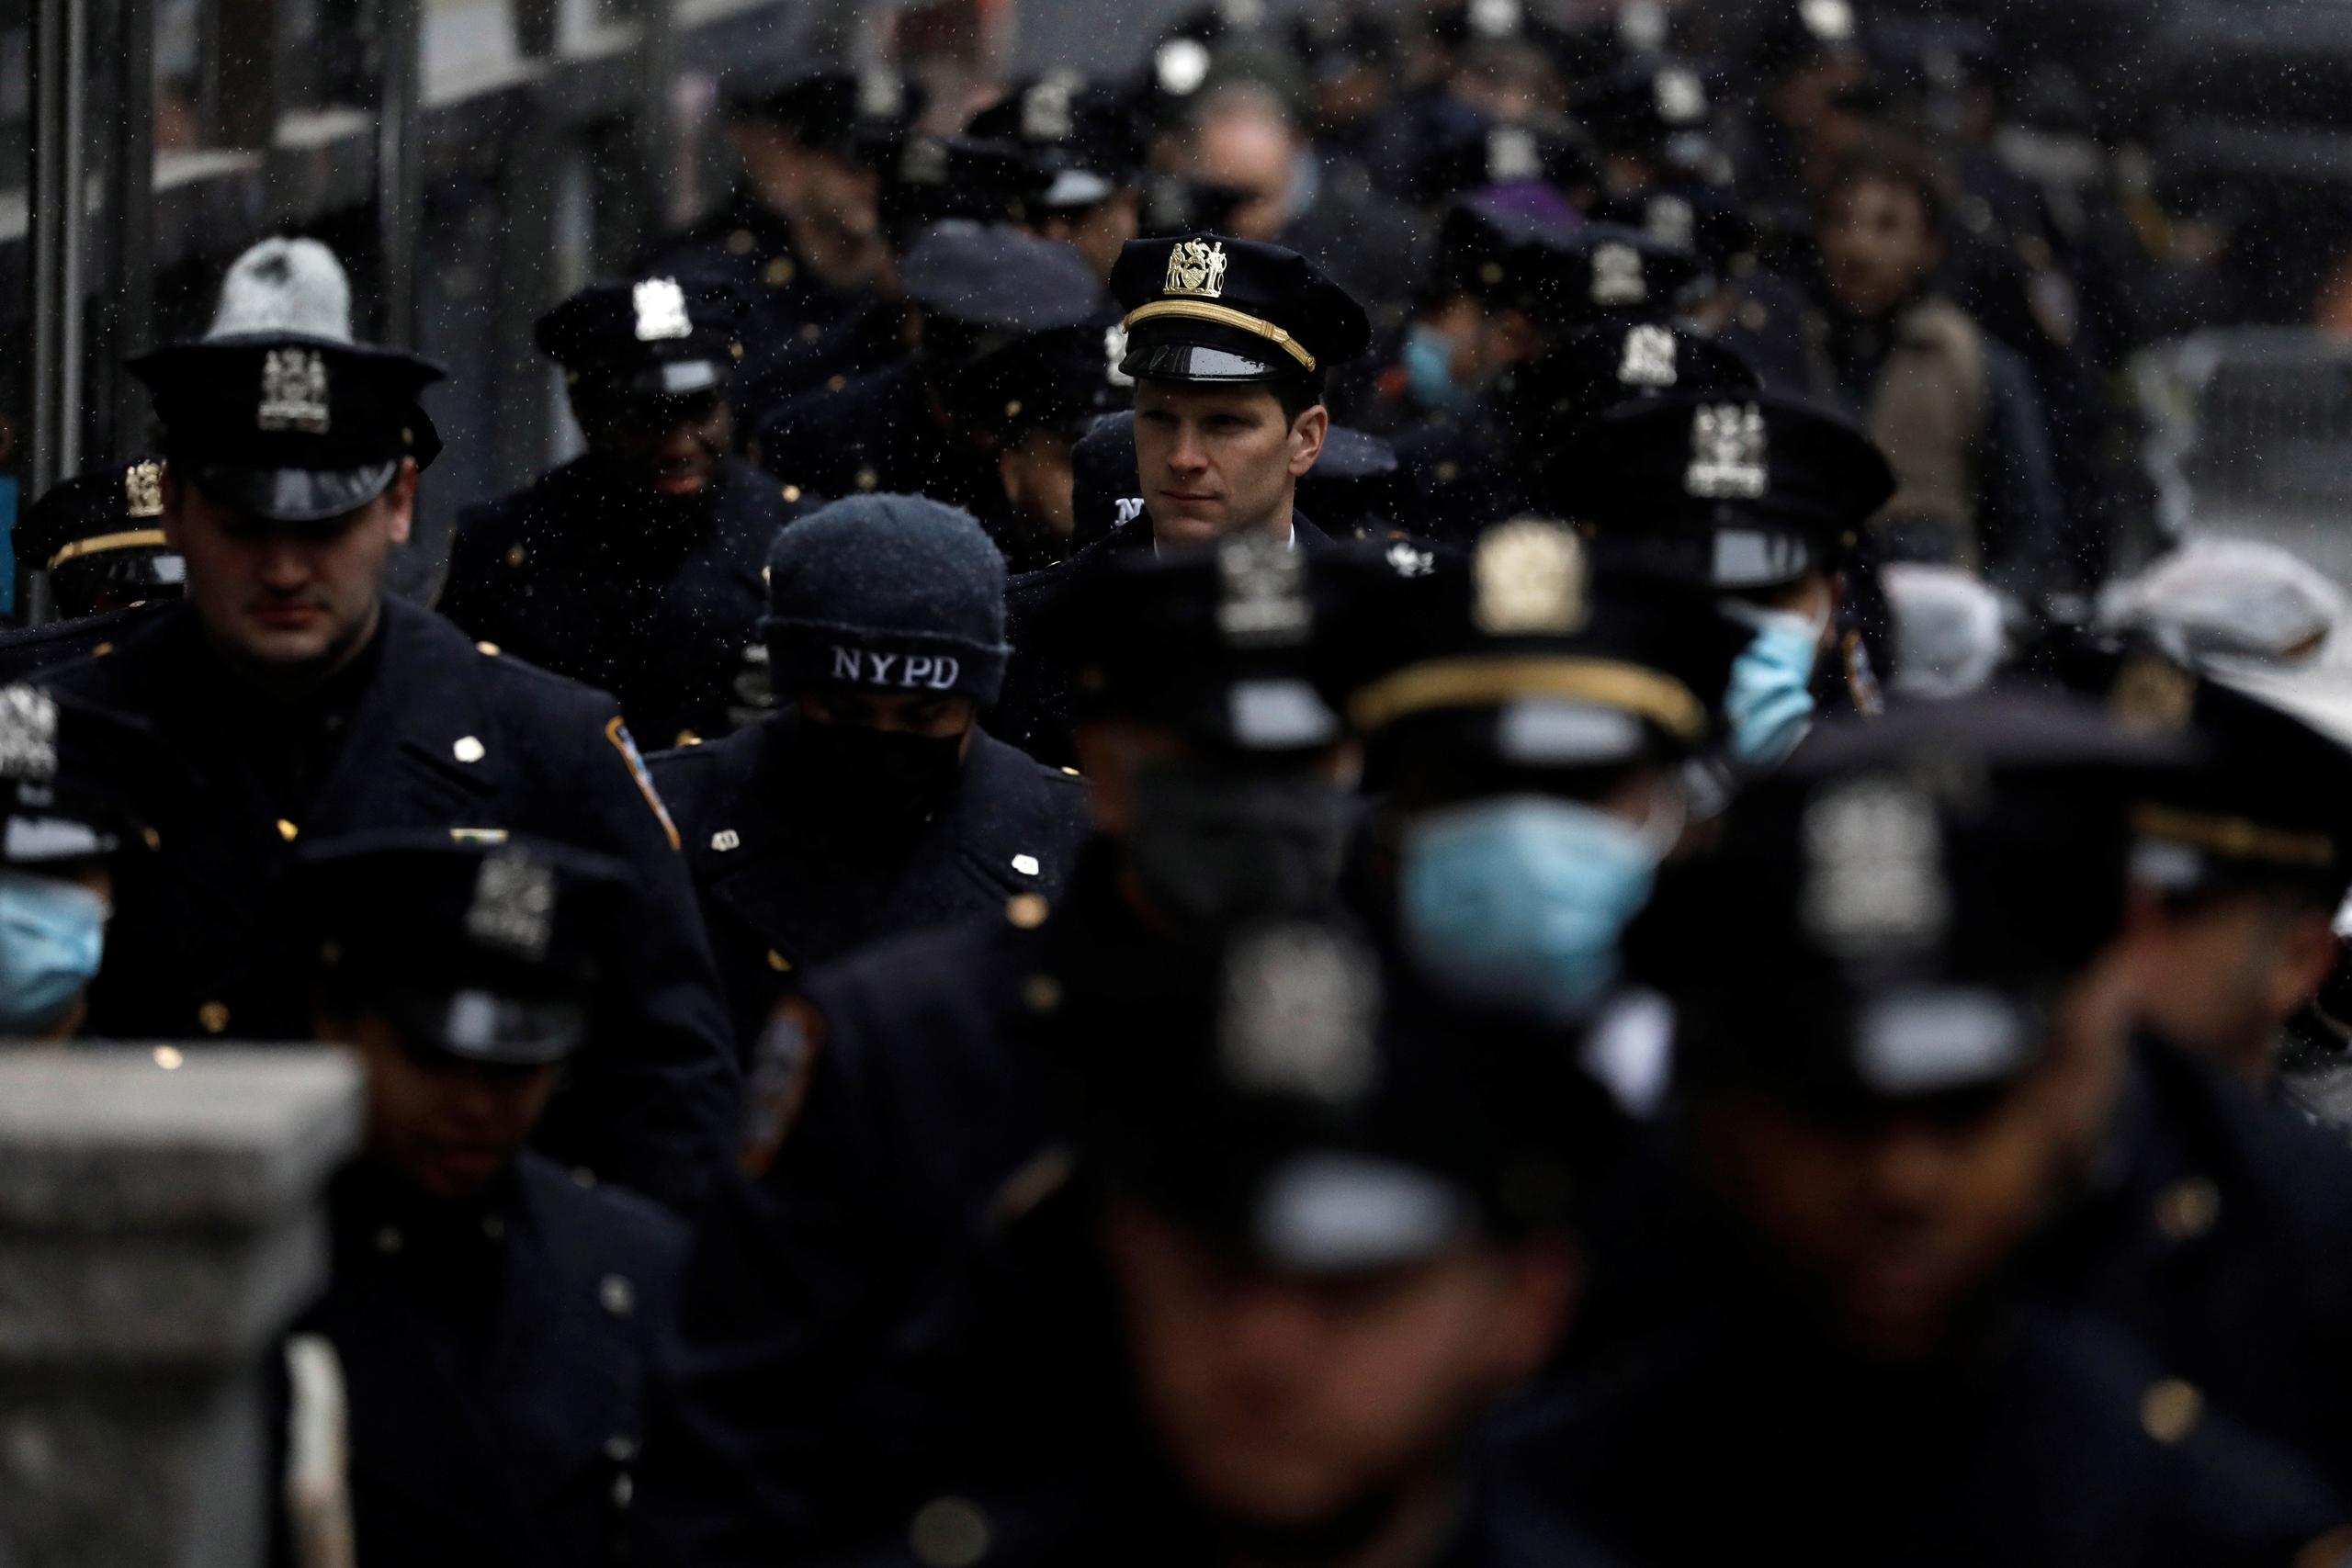 Agentes de policía llegan a la Catedral de San Patricio para el funeral del oficial de policía asesinado de la ciudad de Nueva York Jason Rivera en Nueva York, Nueva York, EE. UU., 28 de enero de 2022. EFE/EPA/Peter Foley
